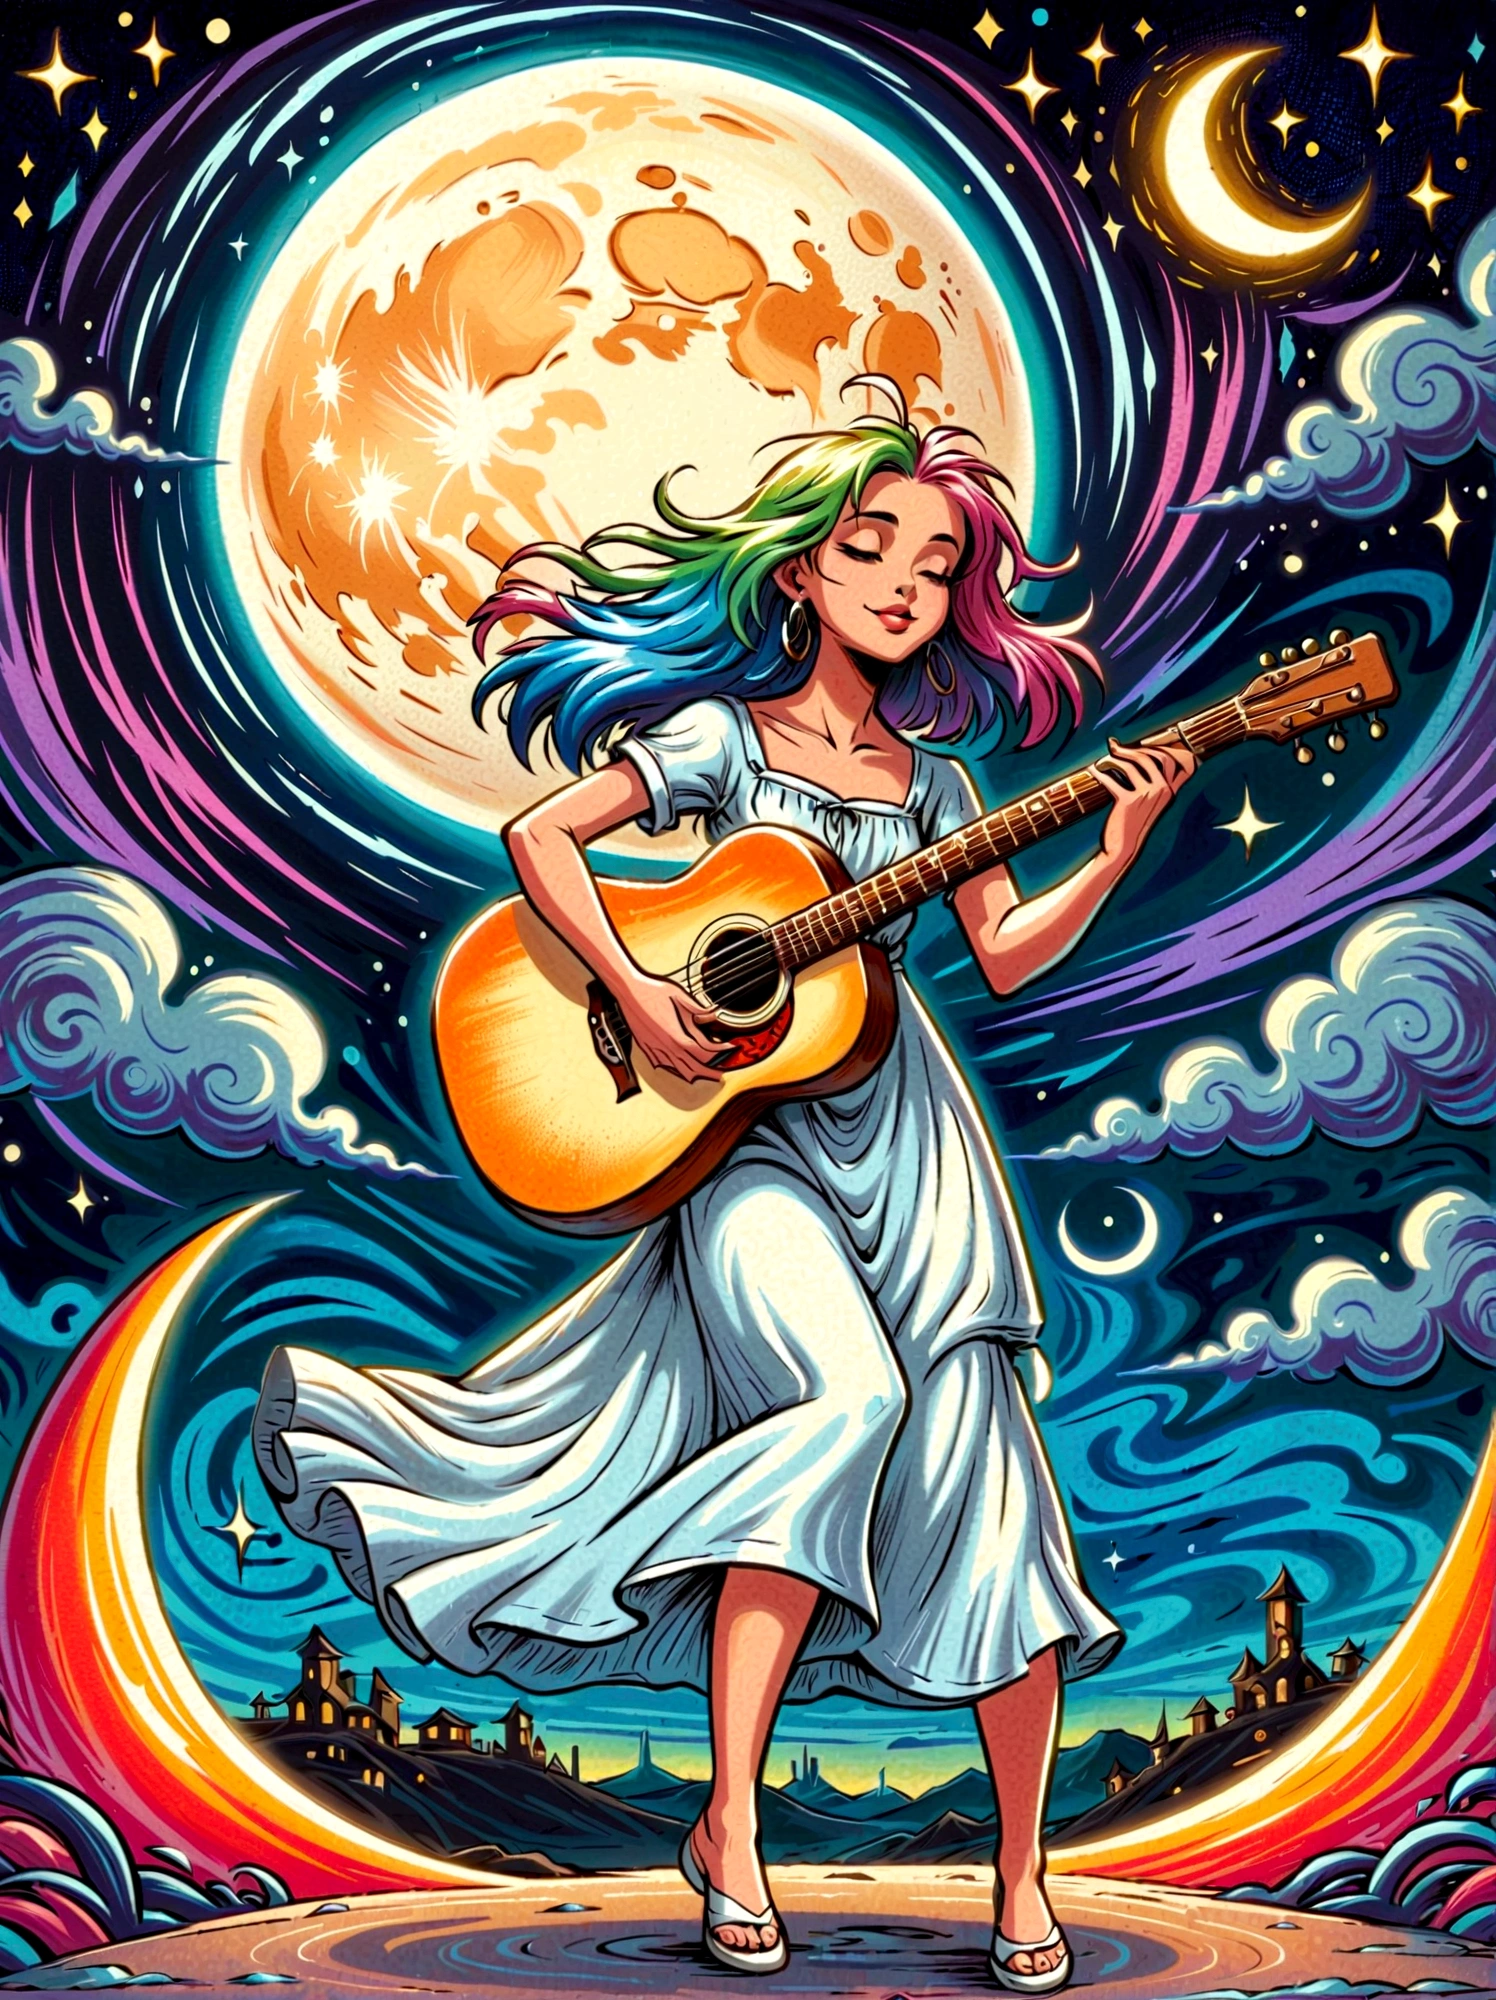 卡通涂鸦人物，矢量插图，1女孩，独自的，吉他手，头发颜色鲜艳，穿着白色长裙优雅地跳舞的女孩，在超现实又梦幻的天空中，她站在新月上，弹吉他时保持平衡，渲染显示熔化元素，元素看起来流畅地滴落和变形，使用数字风格捕捉场景，通过长曝光技术可以看到，创造一种持续运动和变化的感觉，场景神秘而空灵，柔和的月光洒满四周，用柔和的笔触呈现，在月光幻想中散发出奇思妙想和魅力，解剖学上正确，纹理皮肤，站在涂鸦风格的背景前，为场景增添奇思妙想，1xhsn1